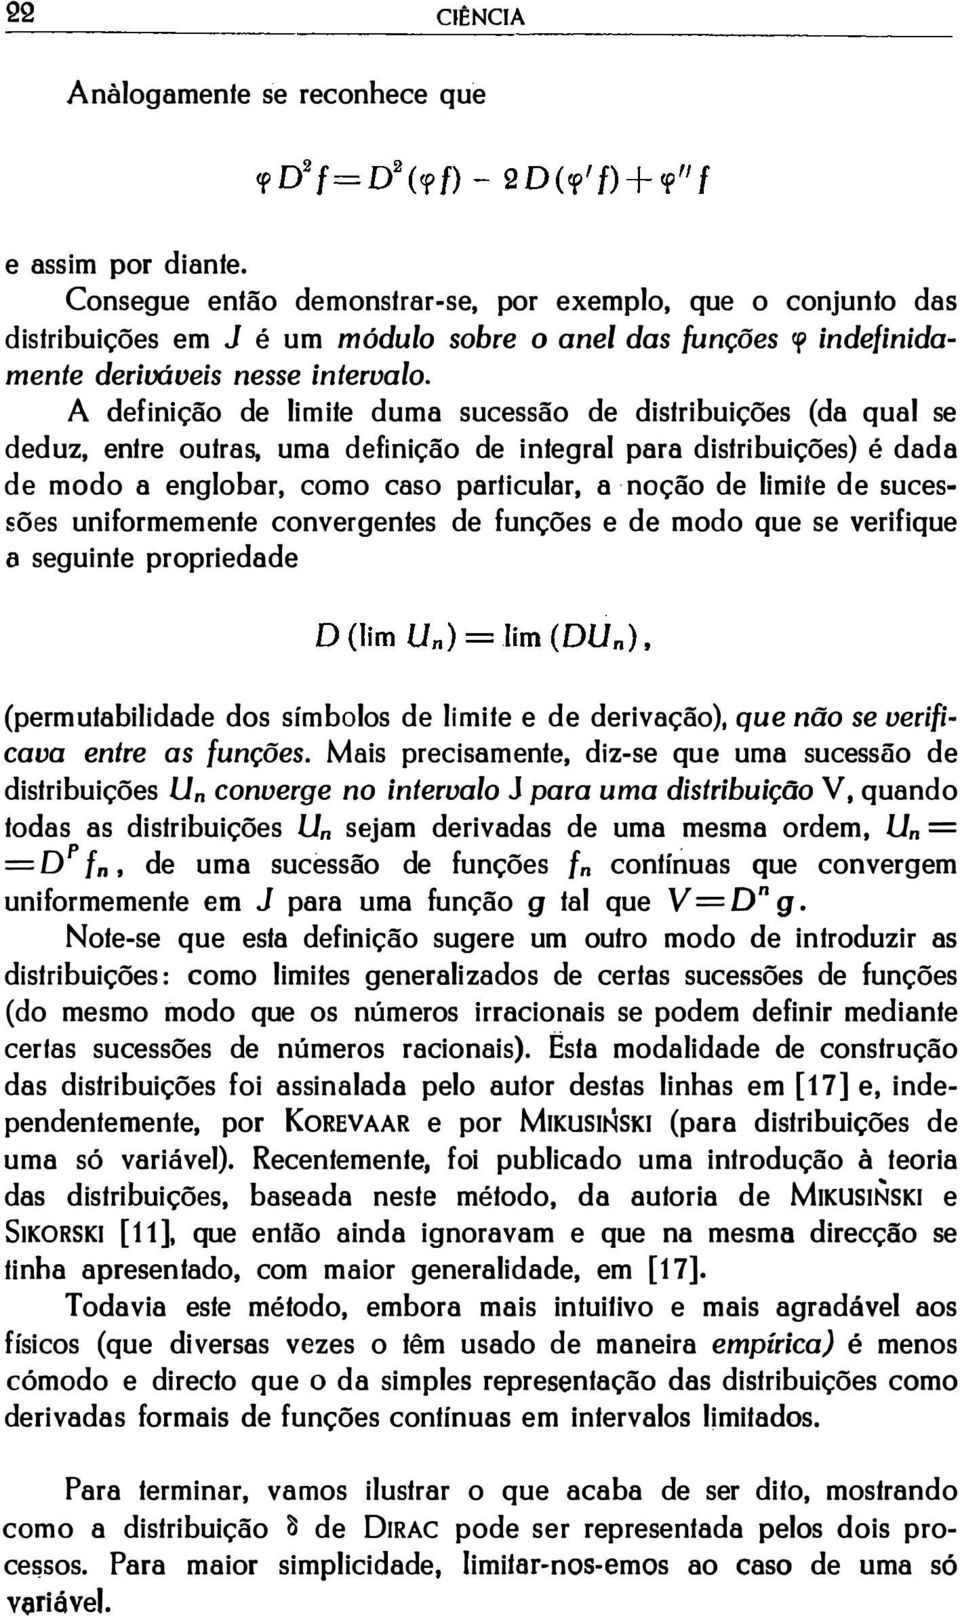 A definição de limite duma sucessão de distribuições (da qual se deduz, entre outras, uma definição de integral para distribuições) é dada de modo a englobar, como caso particular, a noção de limite